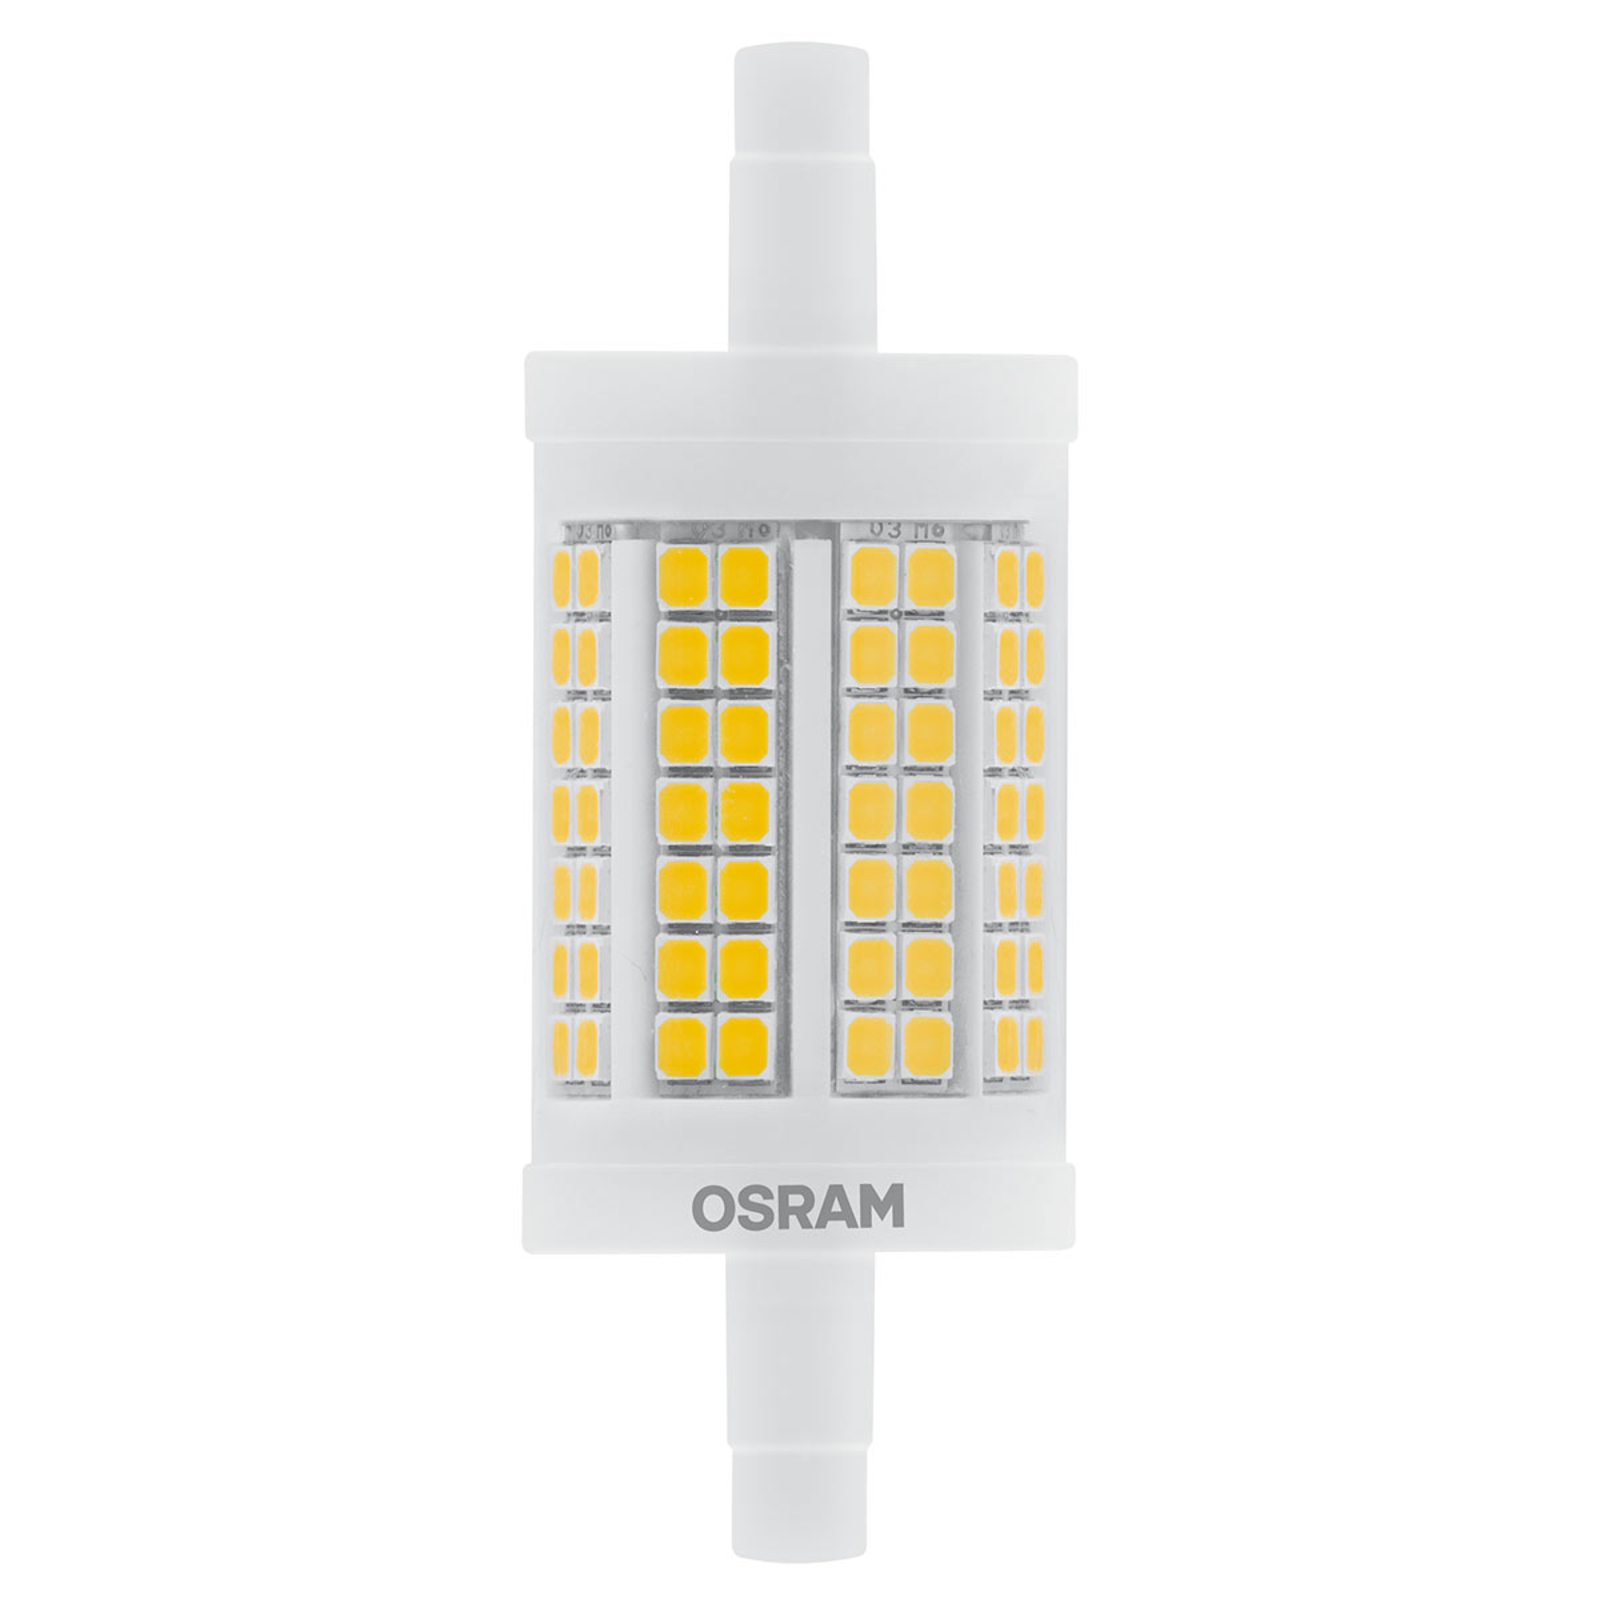 OSRAM LED-Stablampe R7s 12W warmweiß, 1.521 lm